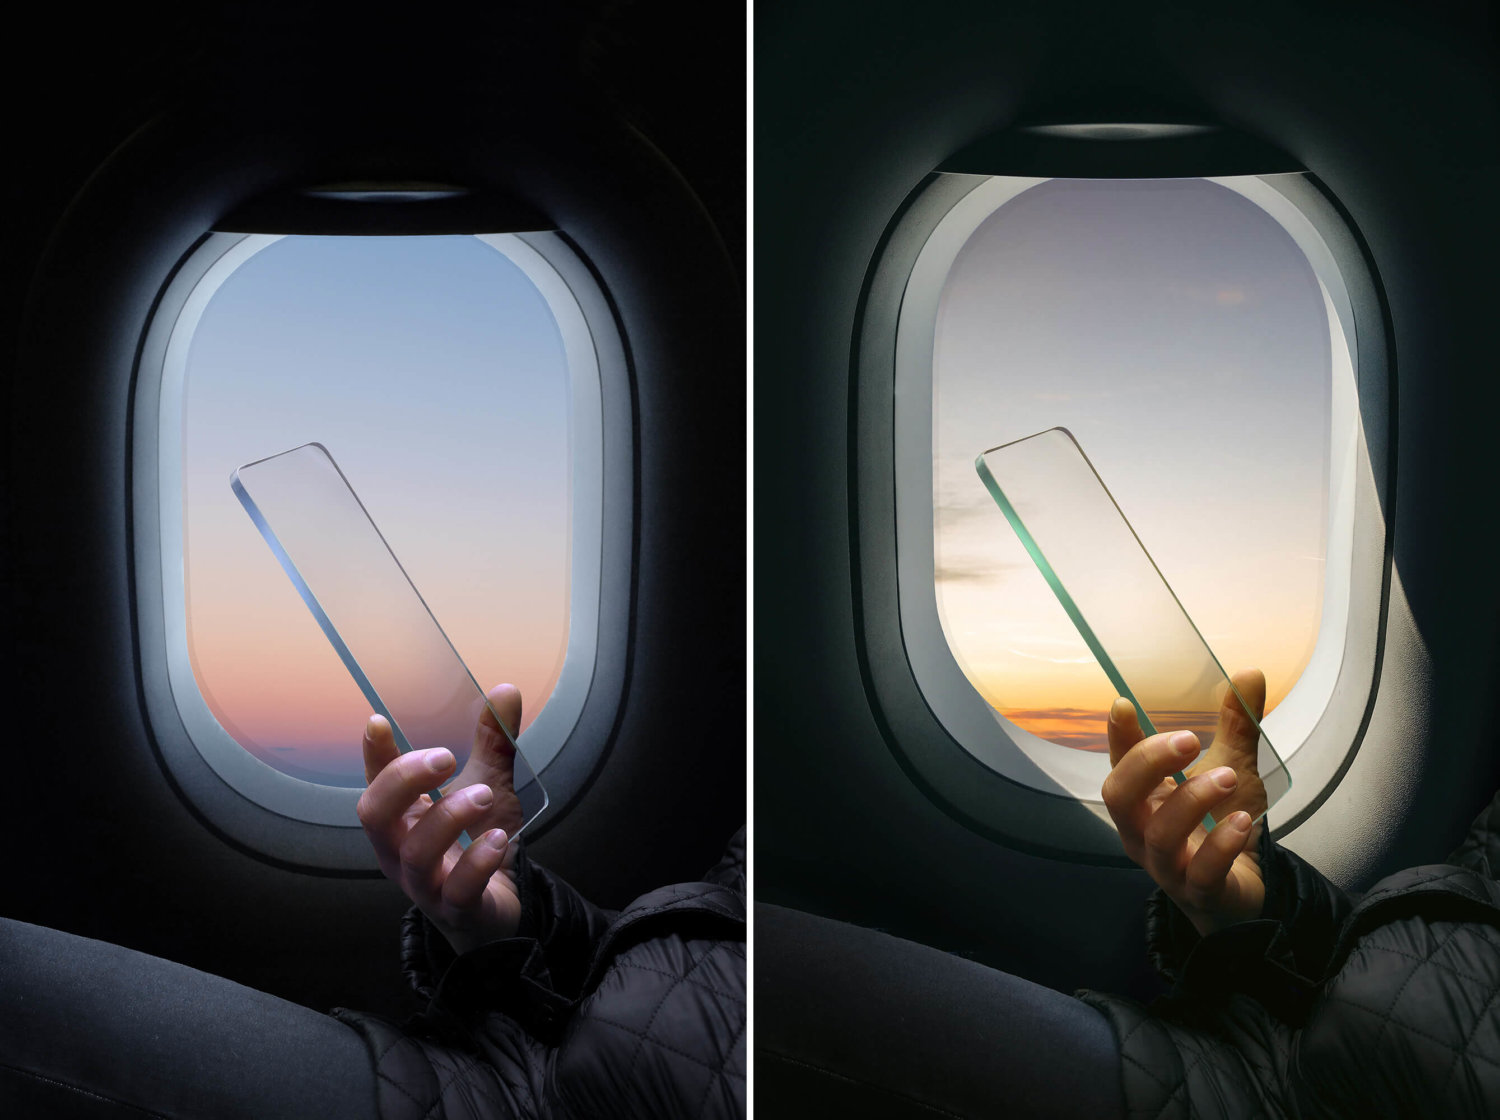 Links und rechts ein nahezu identisches Bild: Eine Hand hält eine Glasscheibe in Smartphone-Form vor einem Flugzeugfenster. Die Lichtverhältnisse sind unterschiedlich.